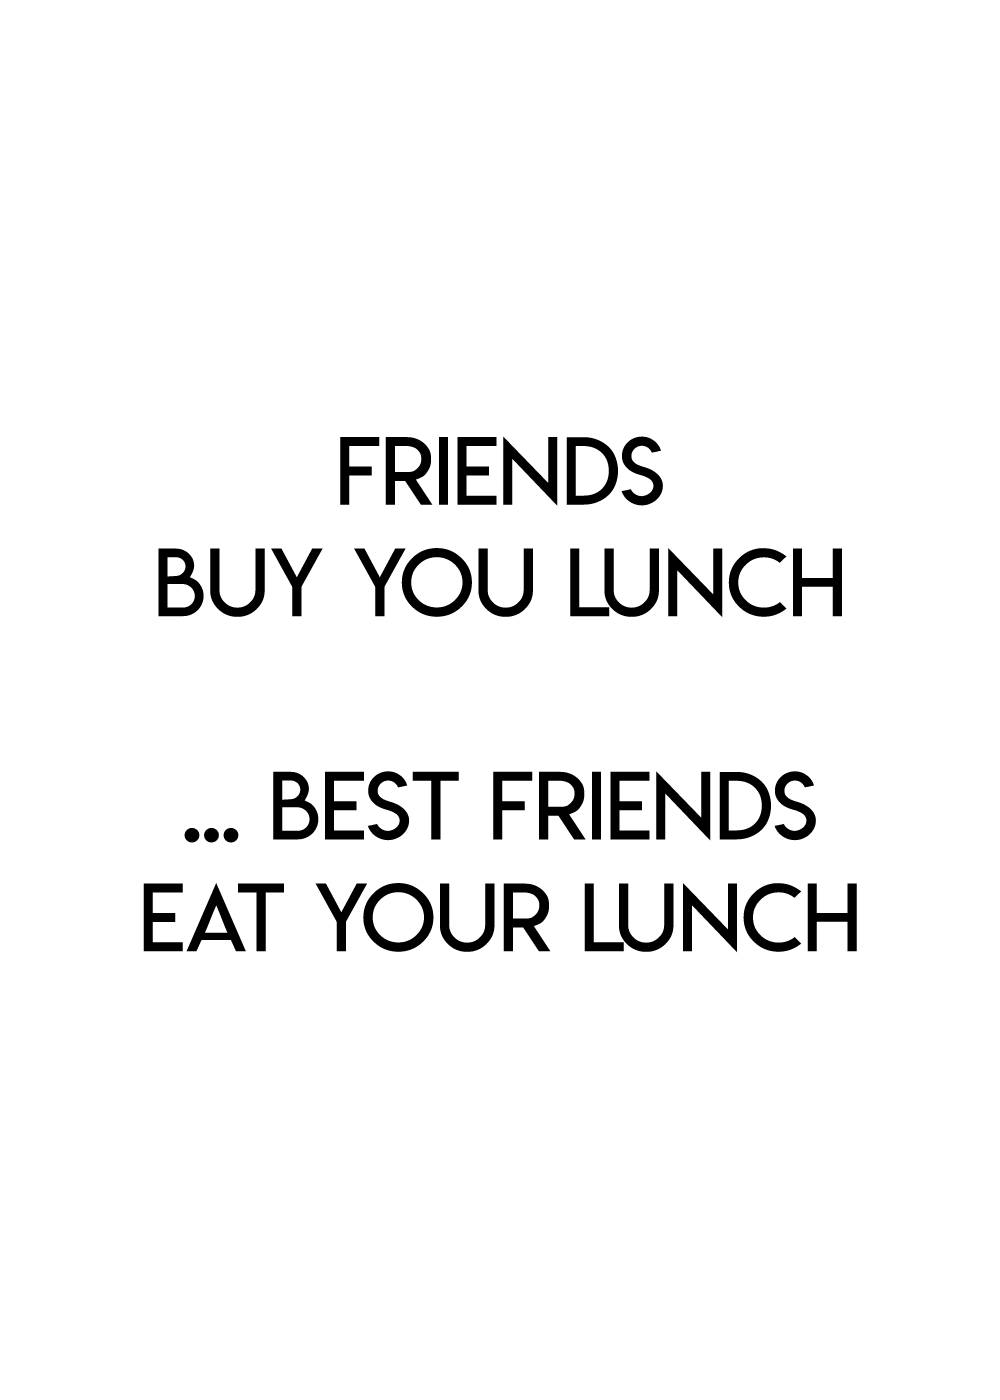 Best friends eat your lunch - Veninde plakat